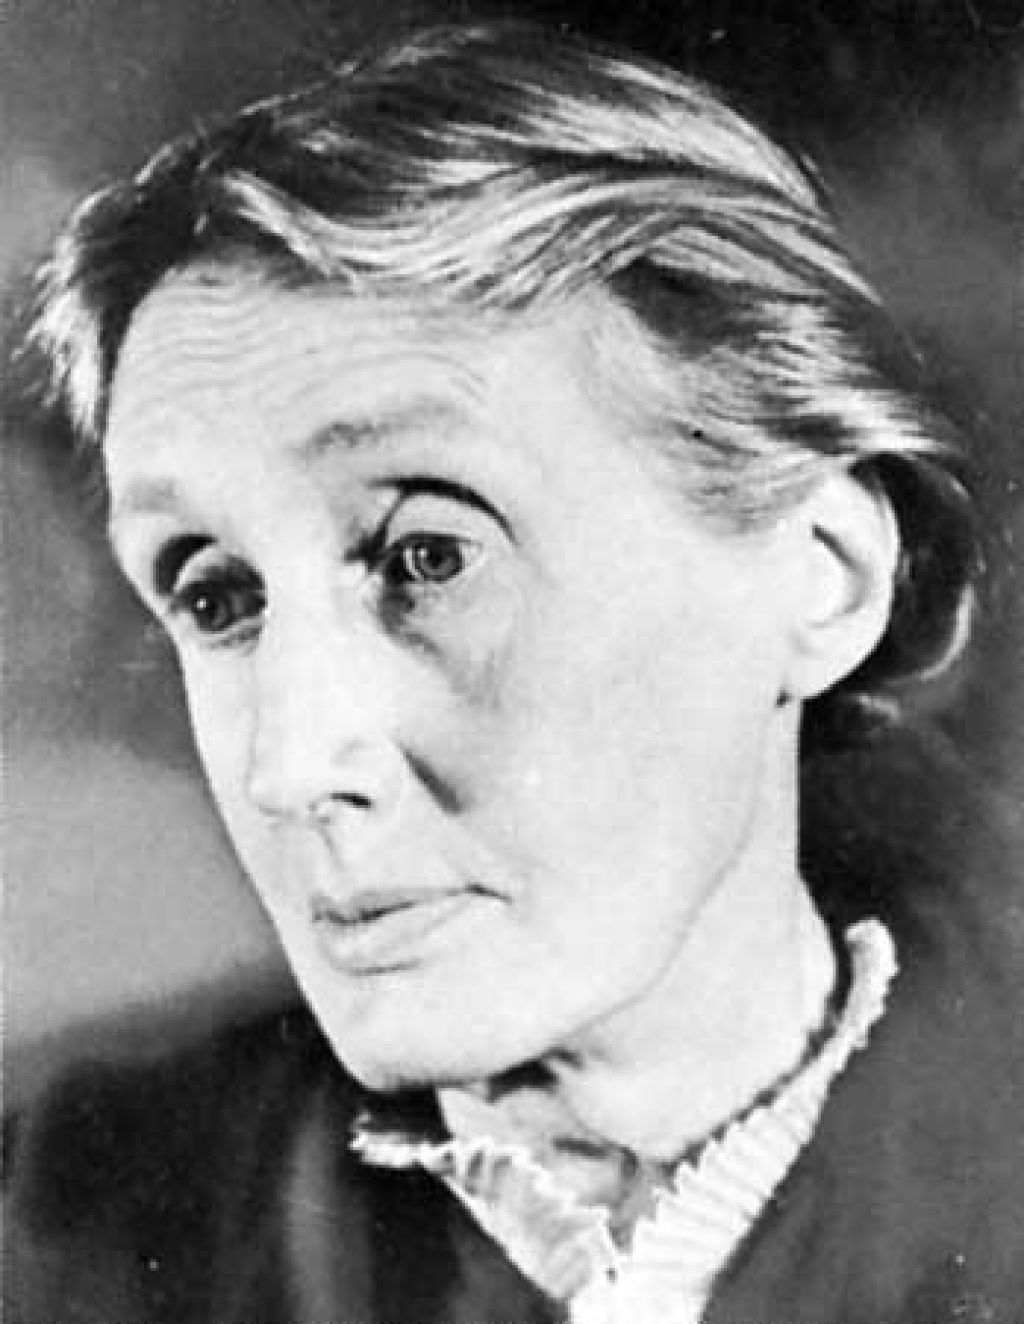 Virginia Woolf ni bila zgolj genialna in depresivna modernistka